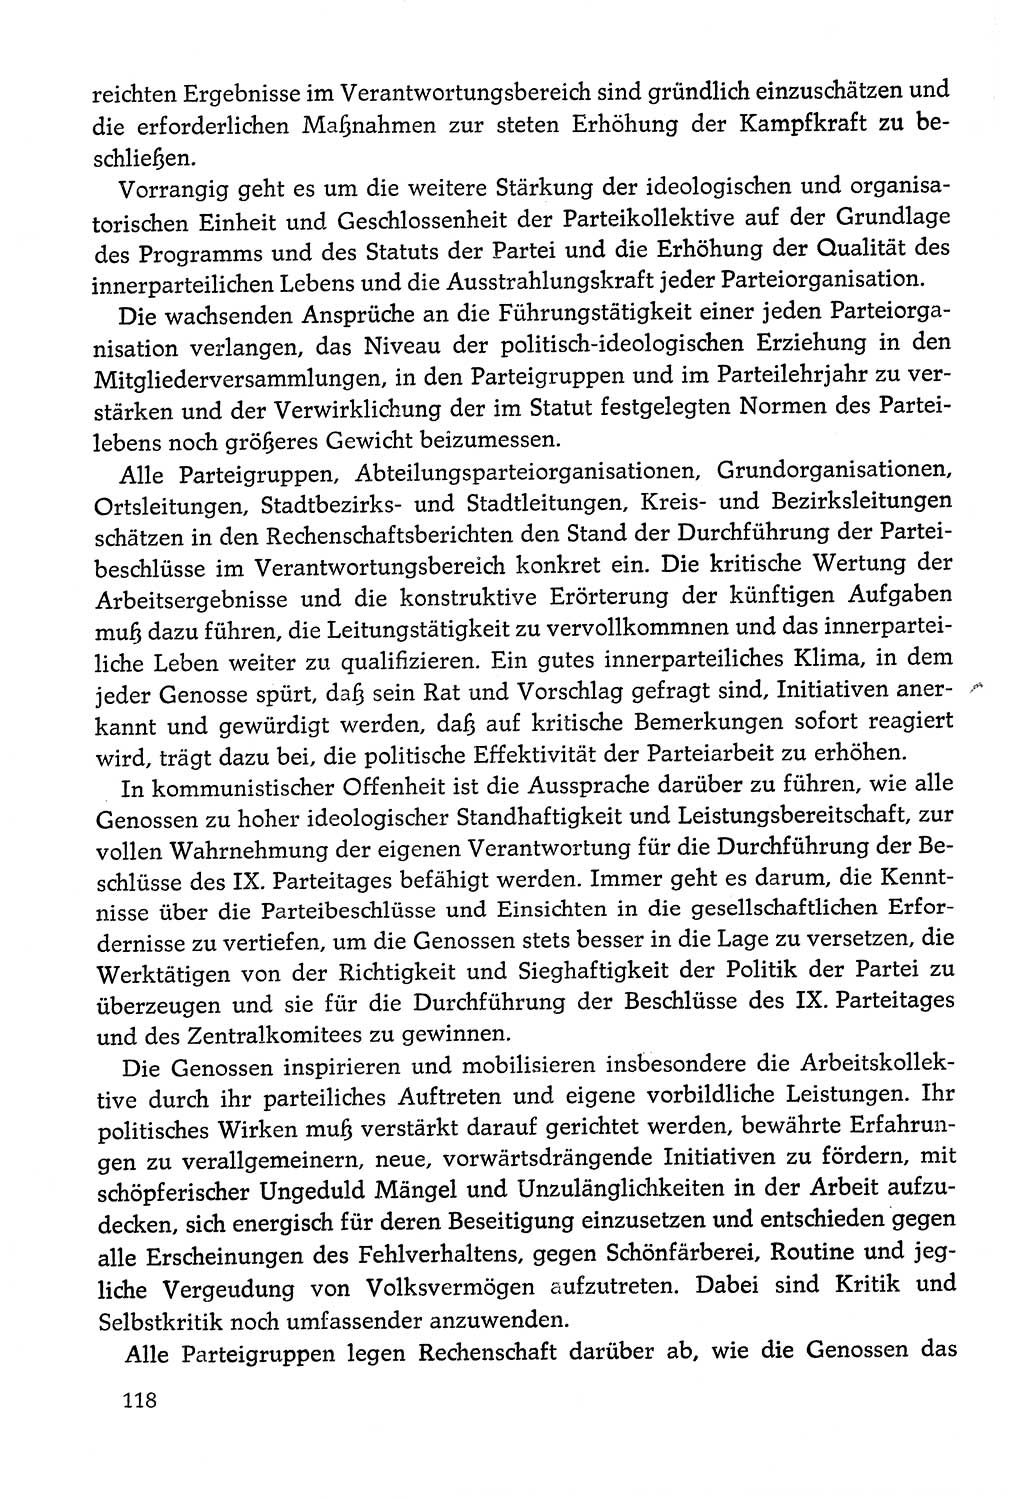 Dokumente der Sozialistischen Einheitspartei Deutschlands (SED) [Deutsche Demokratische Republik (DDR)] 1978-1979, Seite 118 (Dok. SED DDR 1978-1979, S. 118)